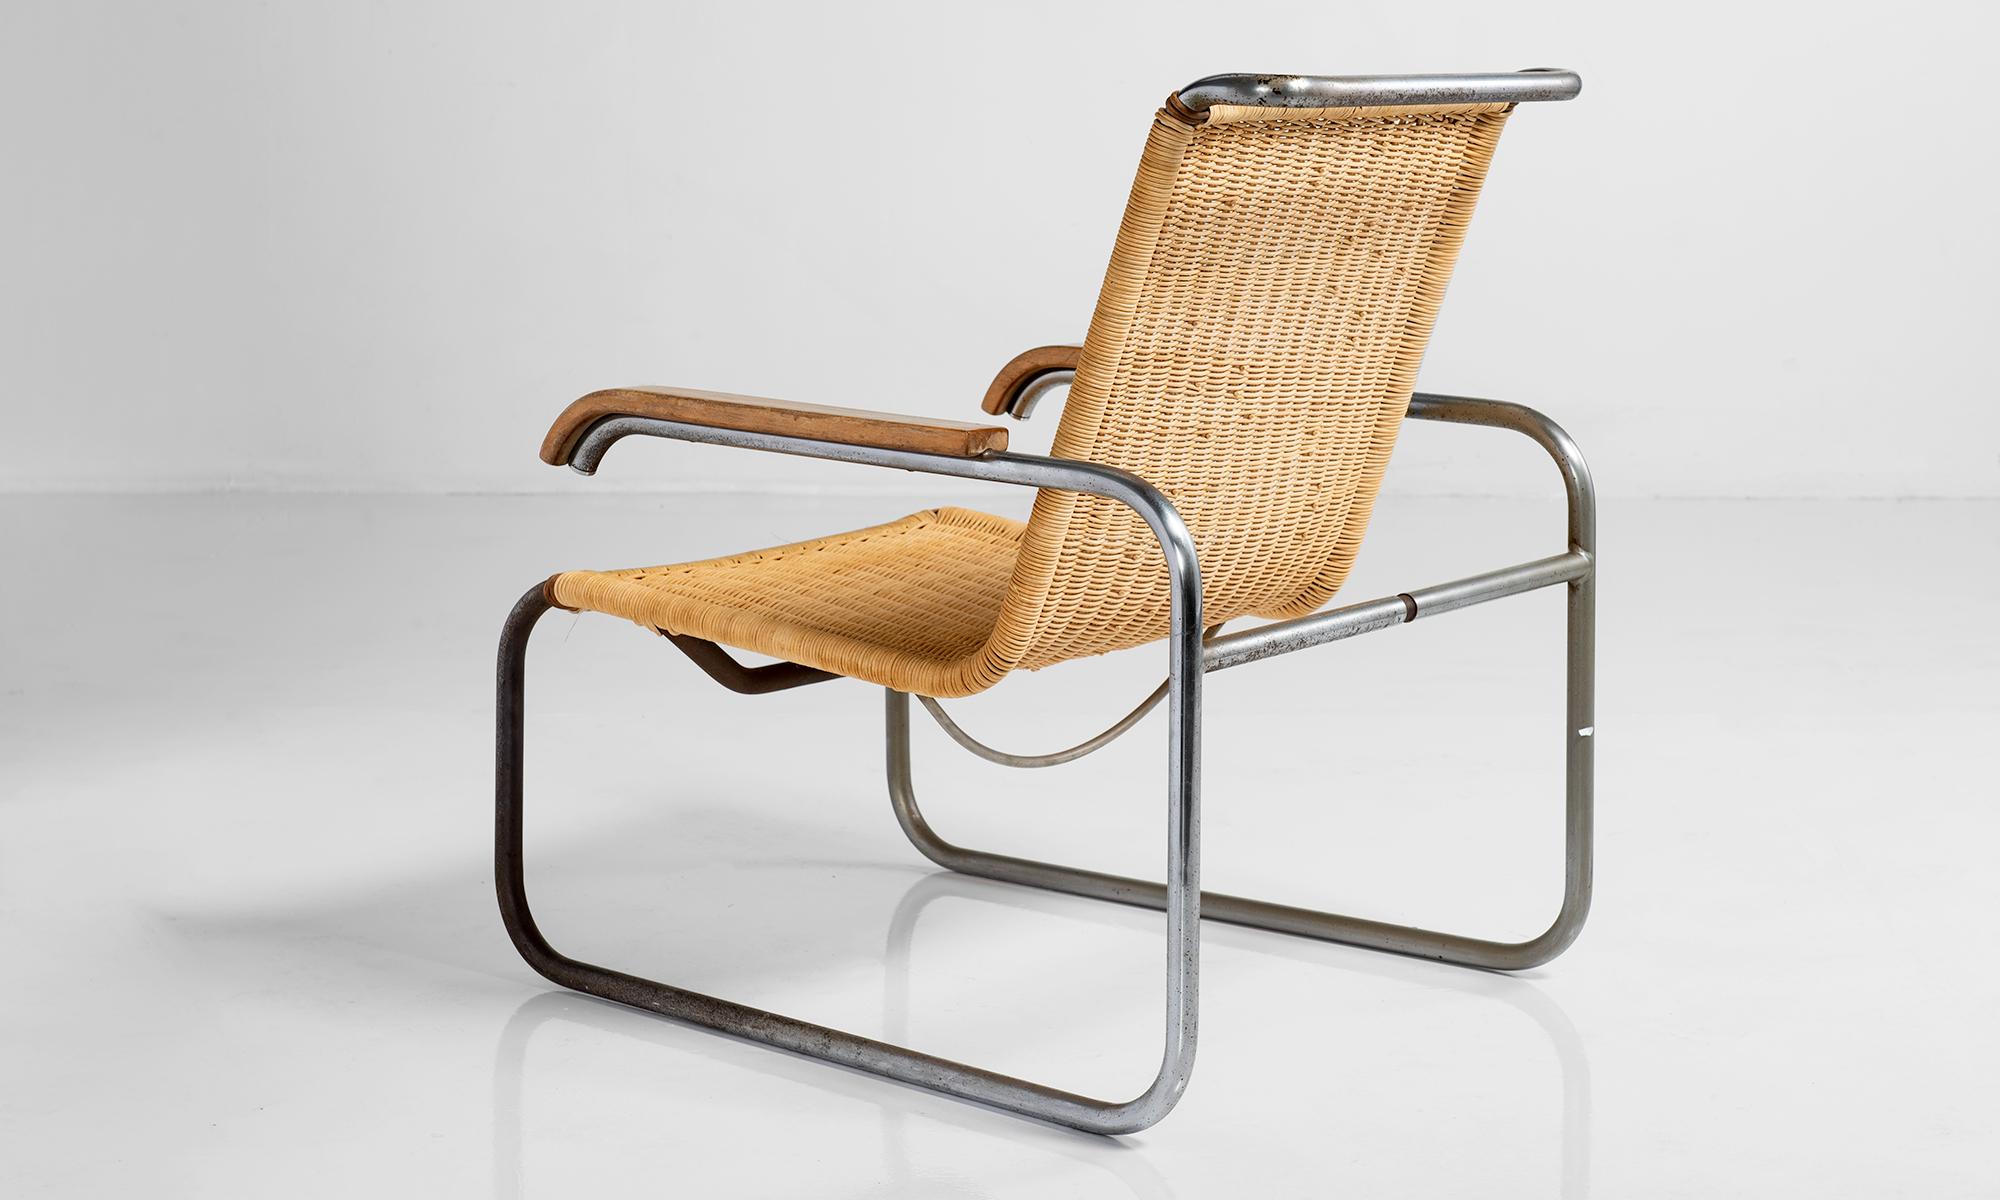 Modell B35 Sessel von Marcel Breuer

Deutschland um 1940

Metallrohrgestell mit originalen Armlehnen aus Eichenholz und neu nachgebildetem Sitz und Rückenlehne aus Korbgeflecht.

Maße: 26